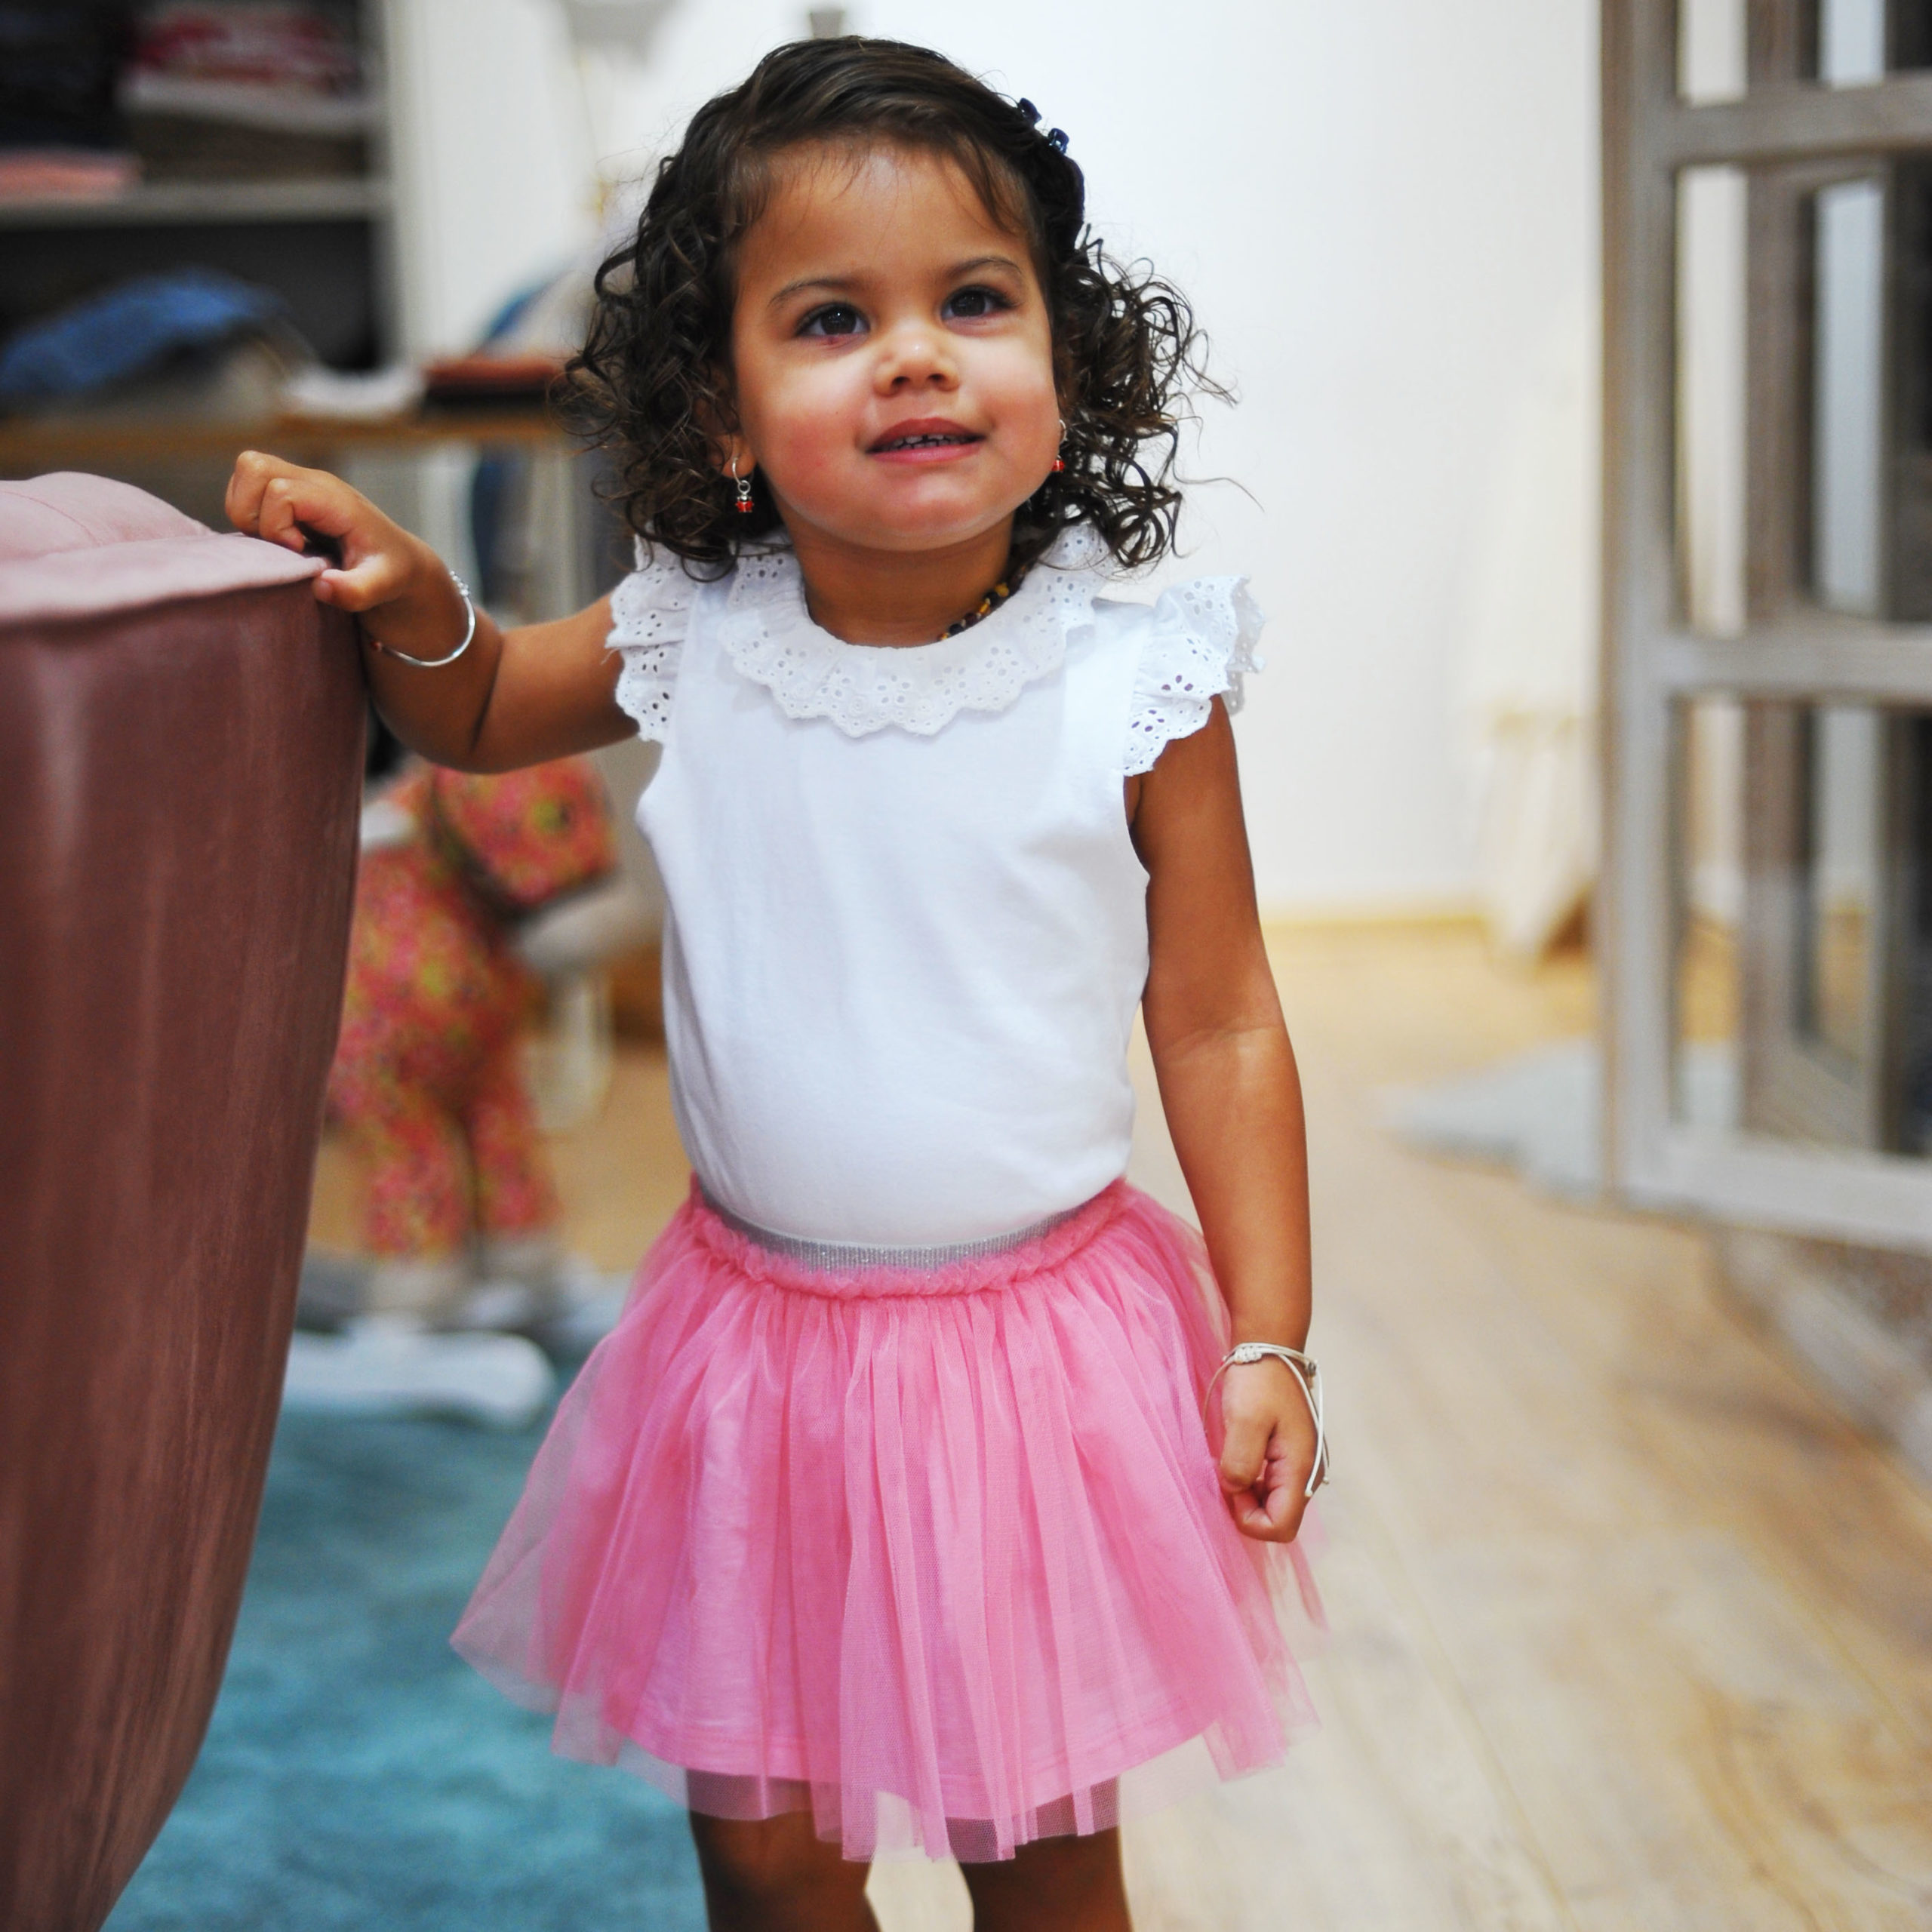 Bébé en jupe tutu rose, jolie petite fille jouant à la maternelle